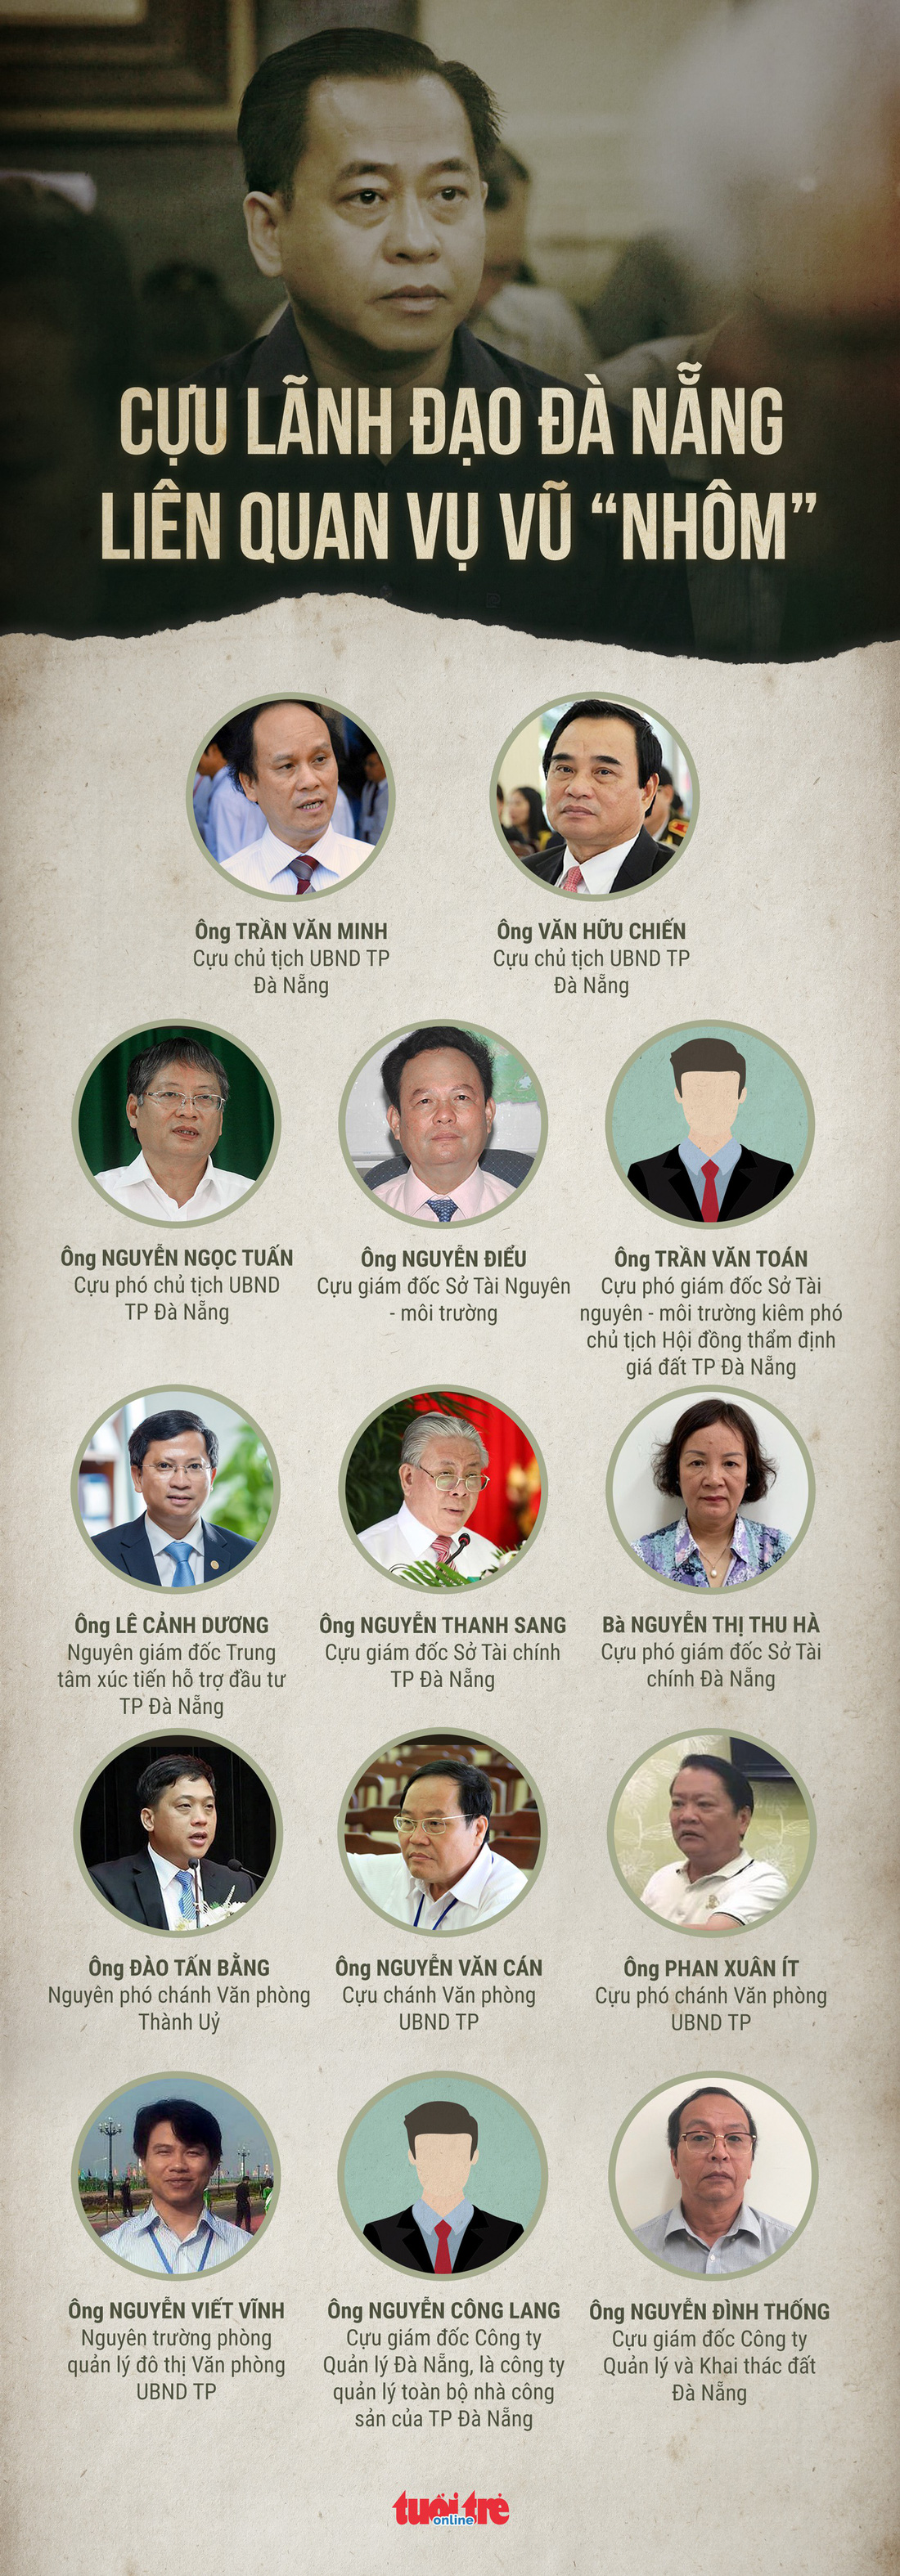 14 cựu lãnh đạo Đà Nẵng liên quan vụ Vũ nhôm - Ảnh 1.